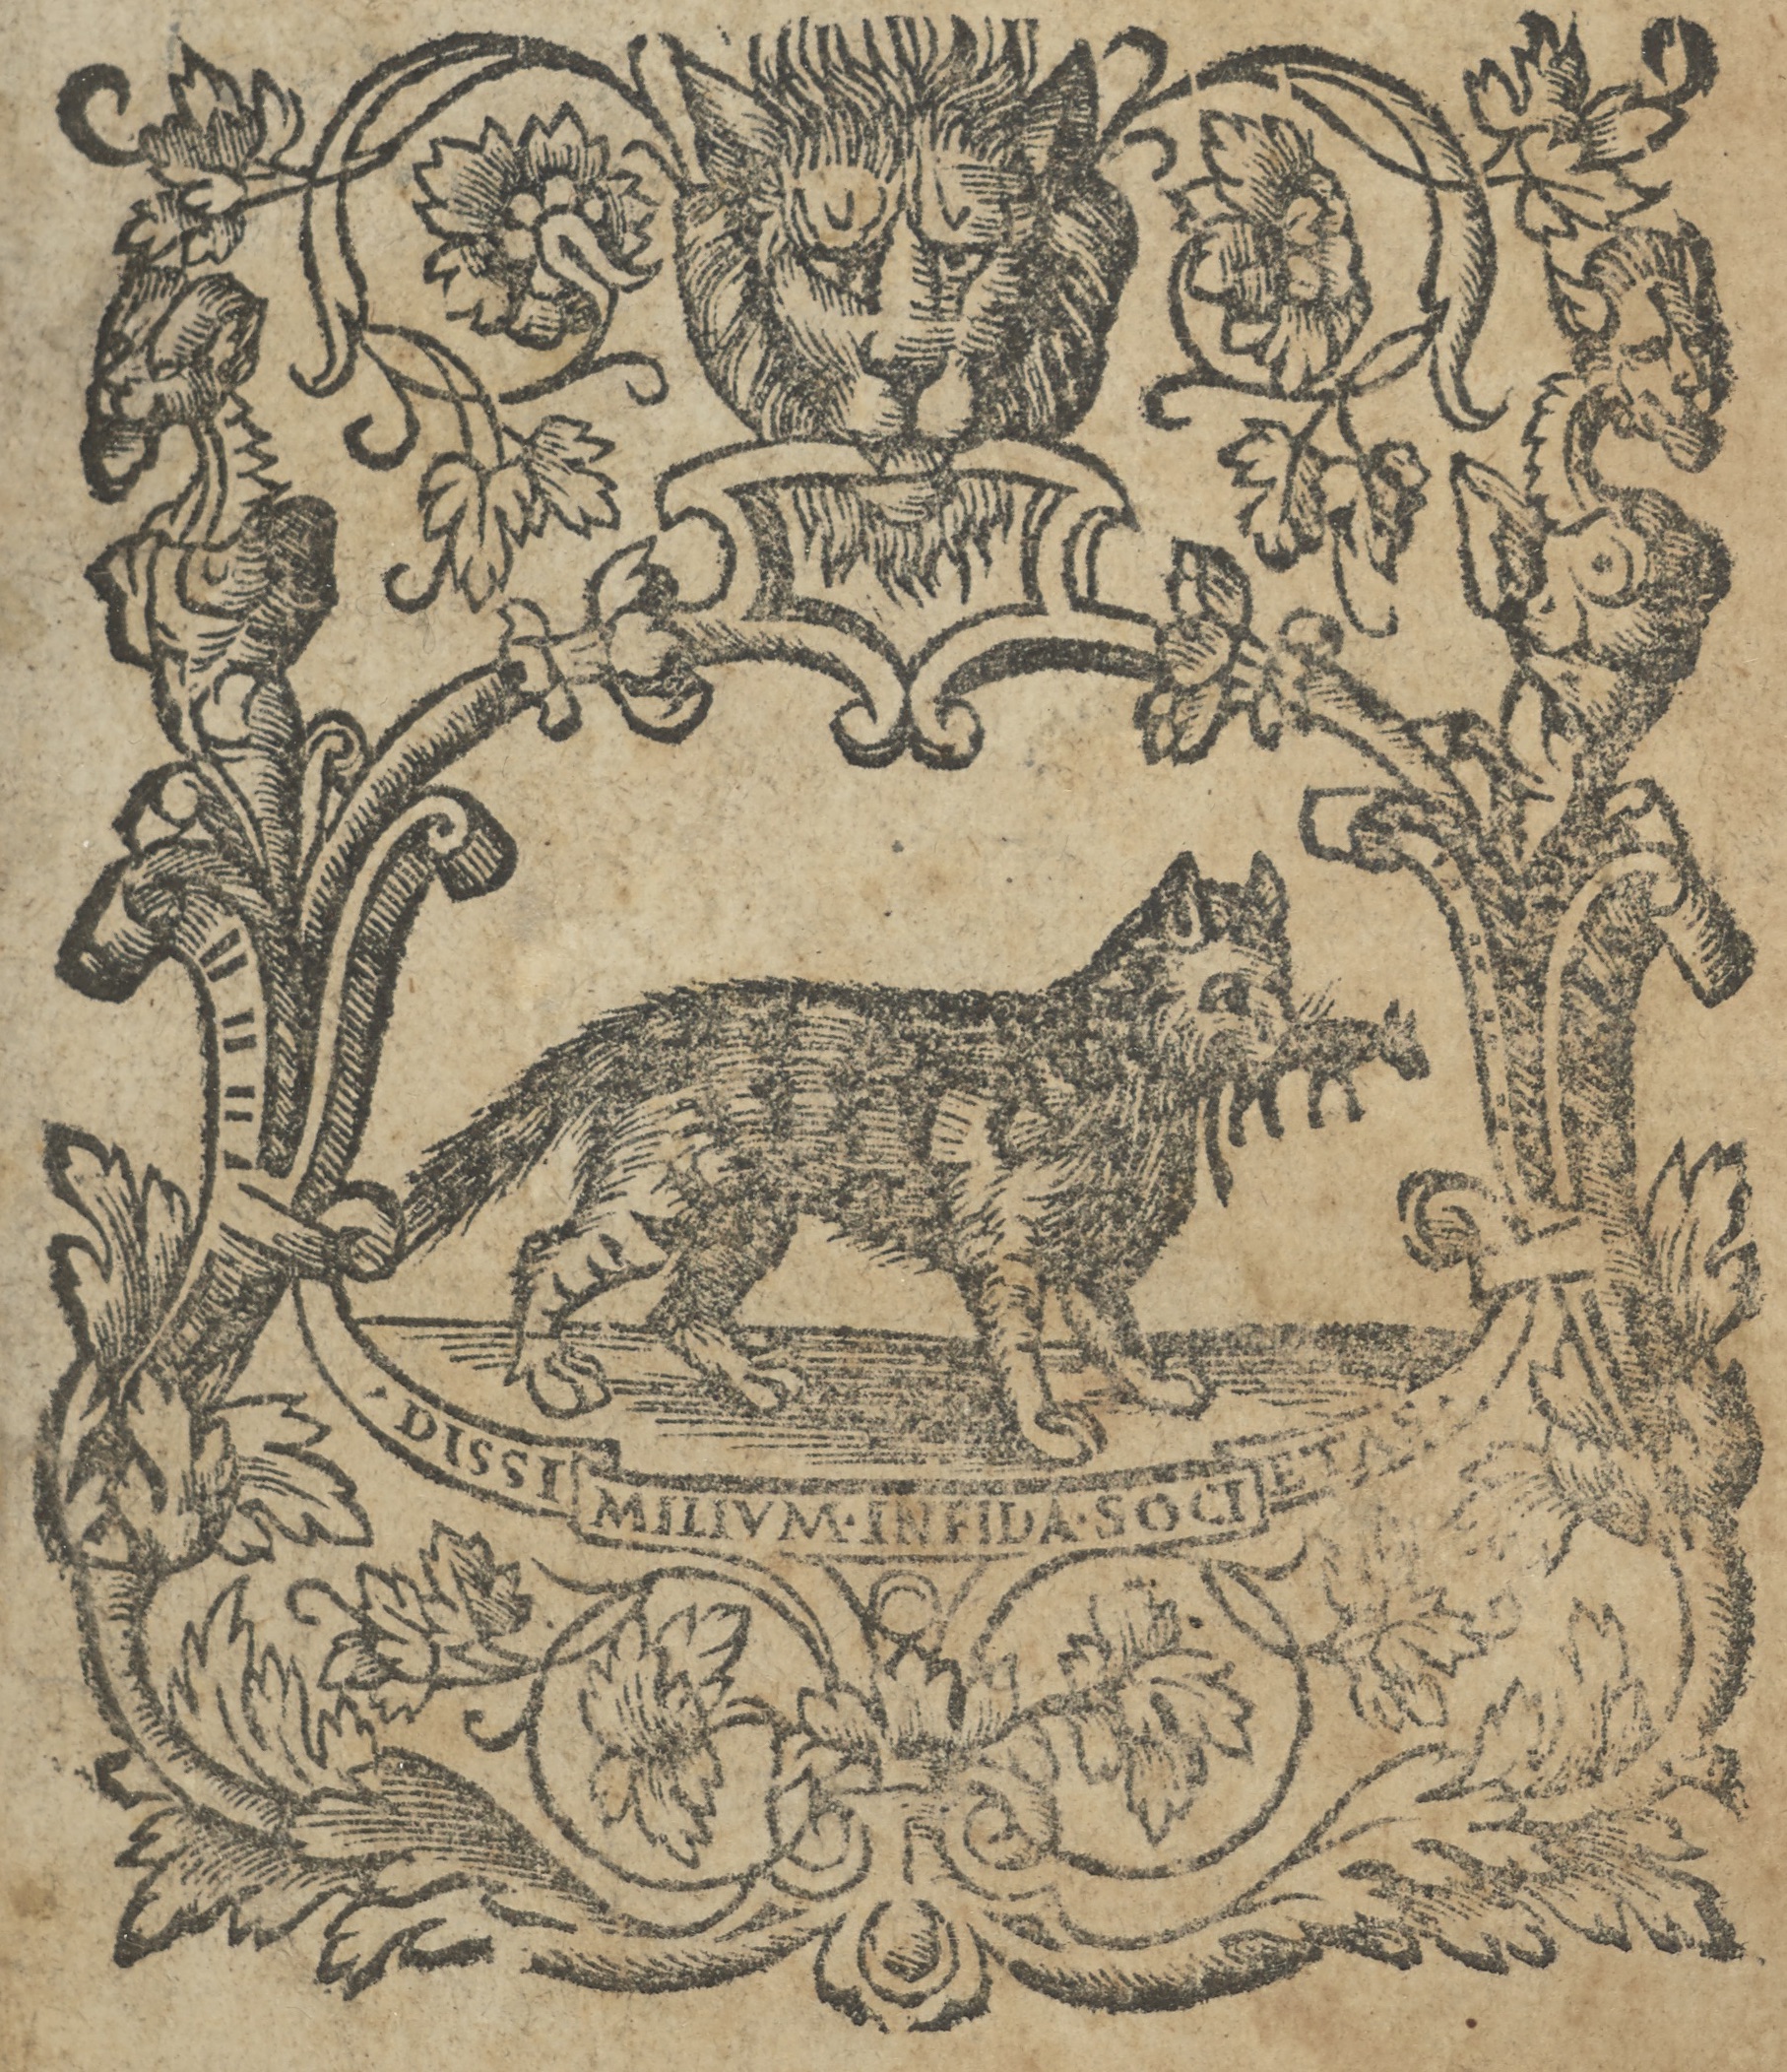 Per Giouann' Antonio de Nicolini da Sabio, [1537]), printer's mark showing a fox with its prey and the motto Dissi Milium Infida Societas